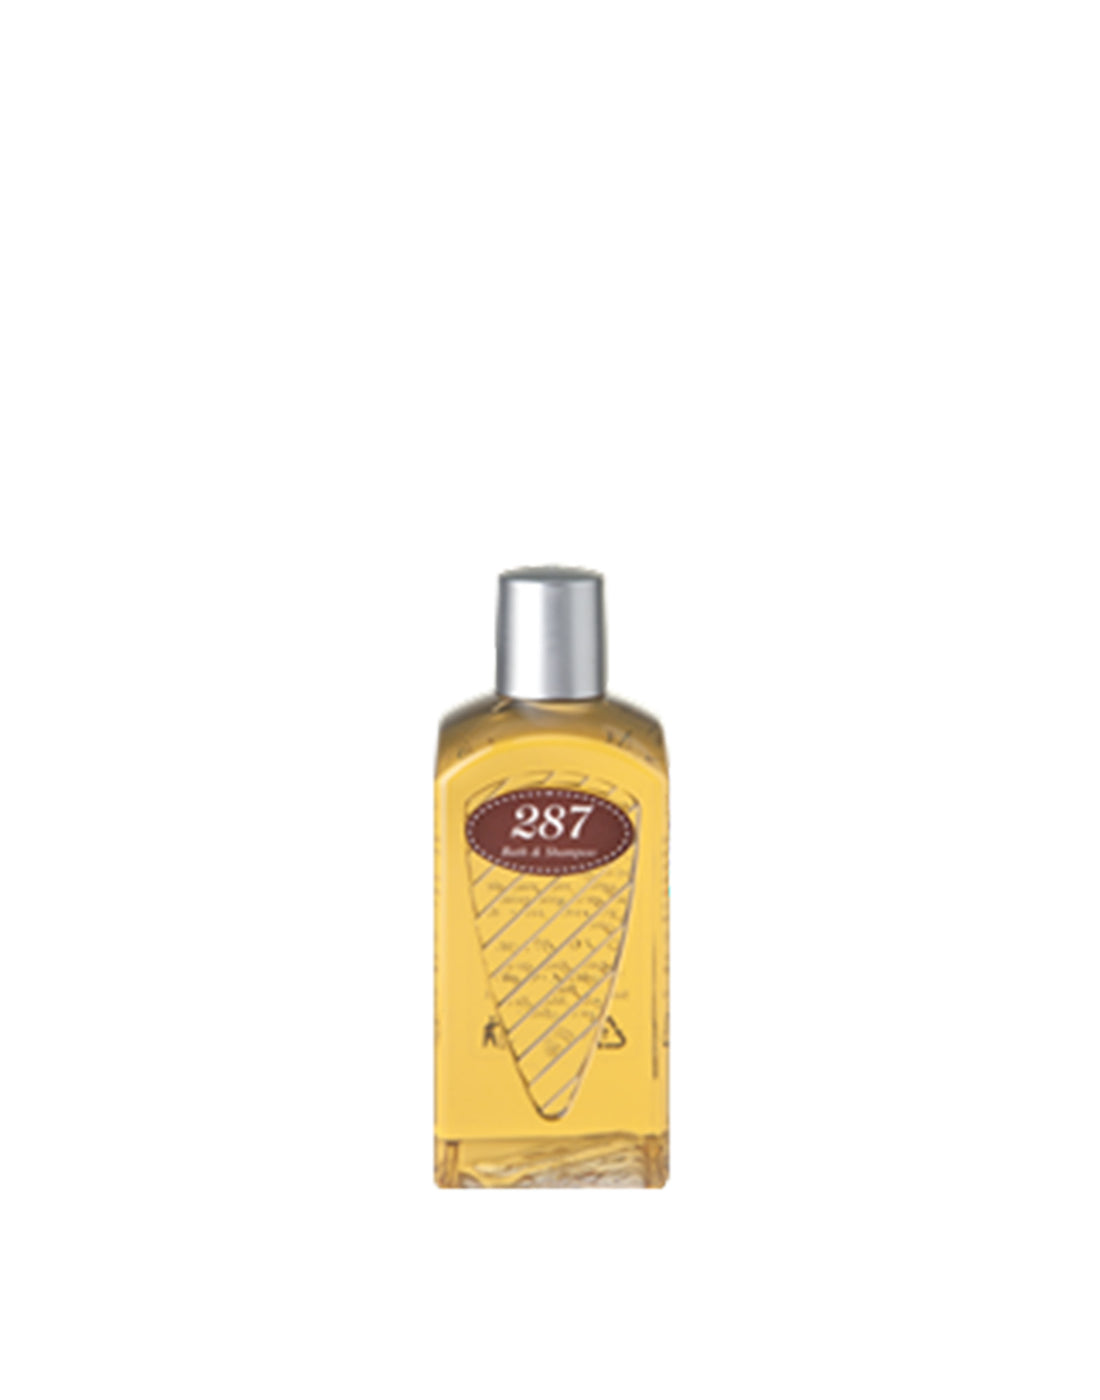 E.MARINELLA Bath & Shampoo Gel "287" 150 ml